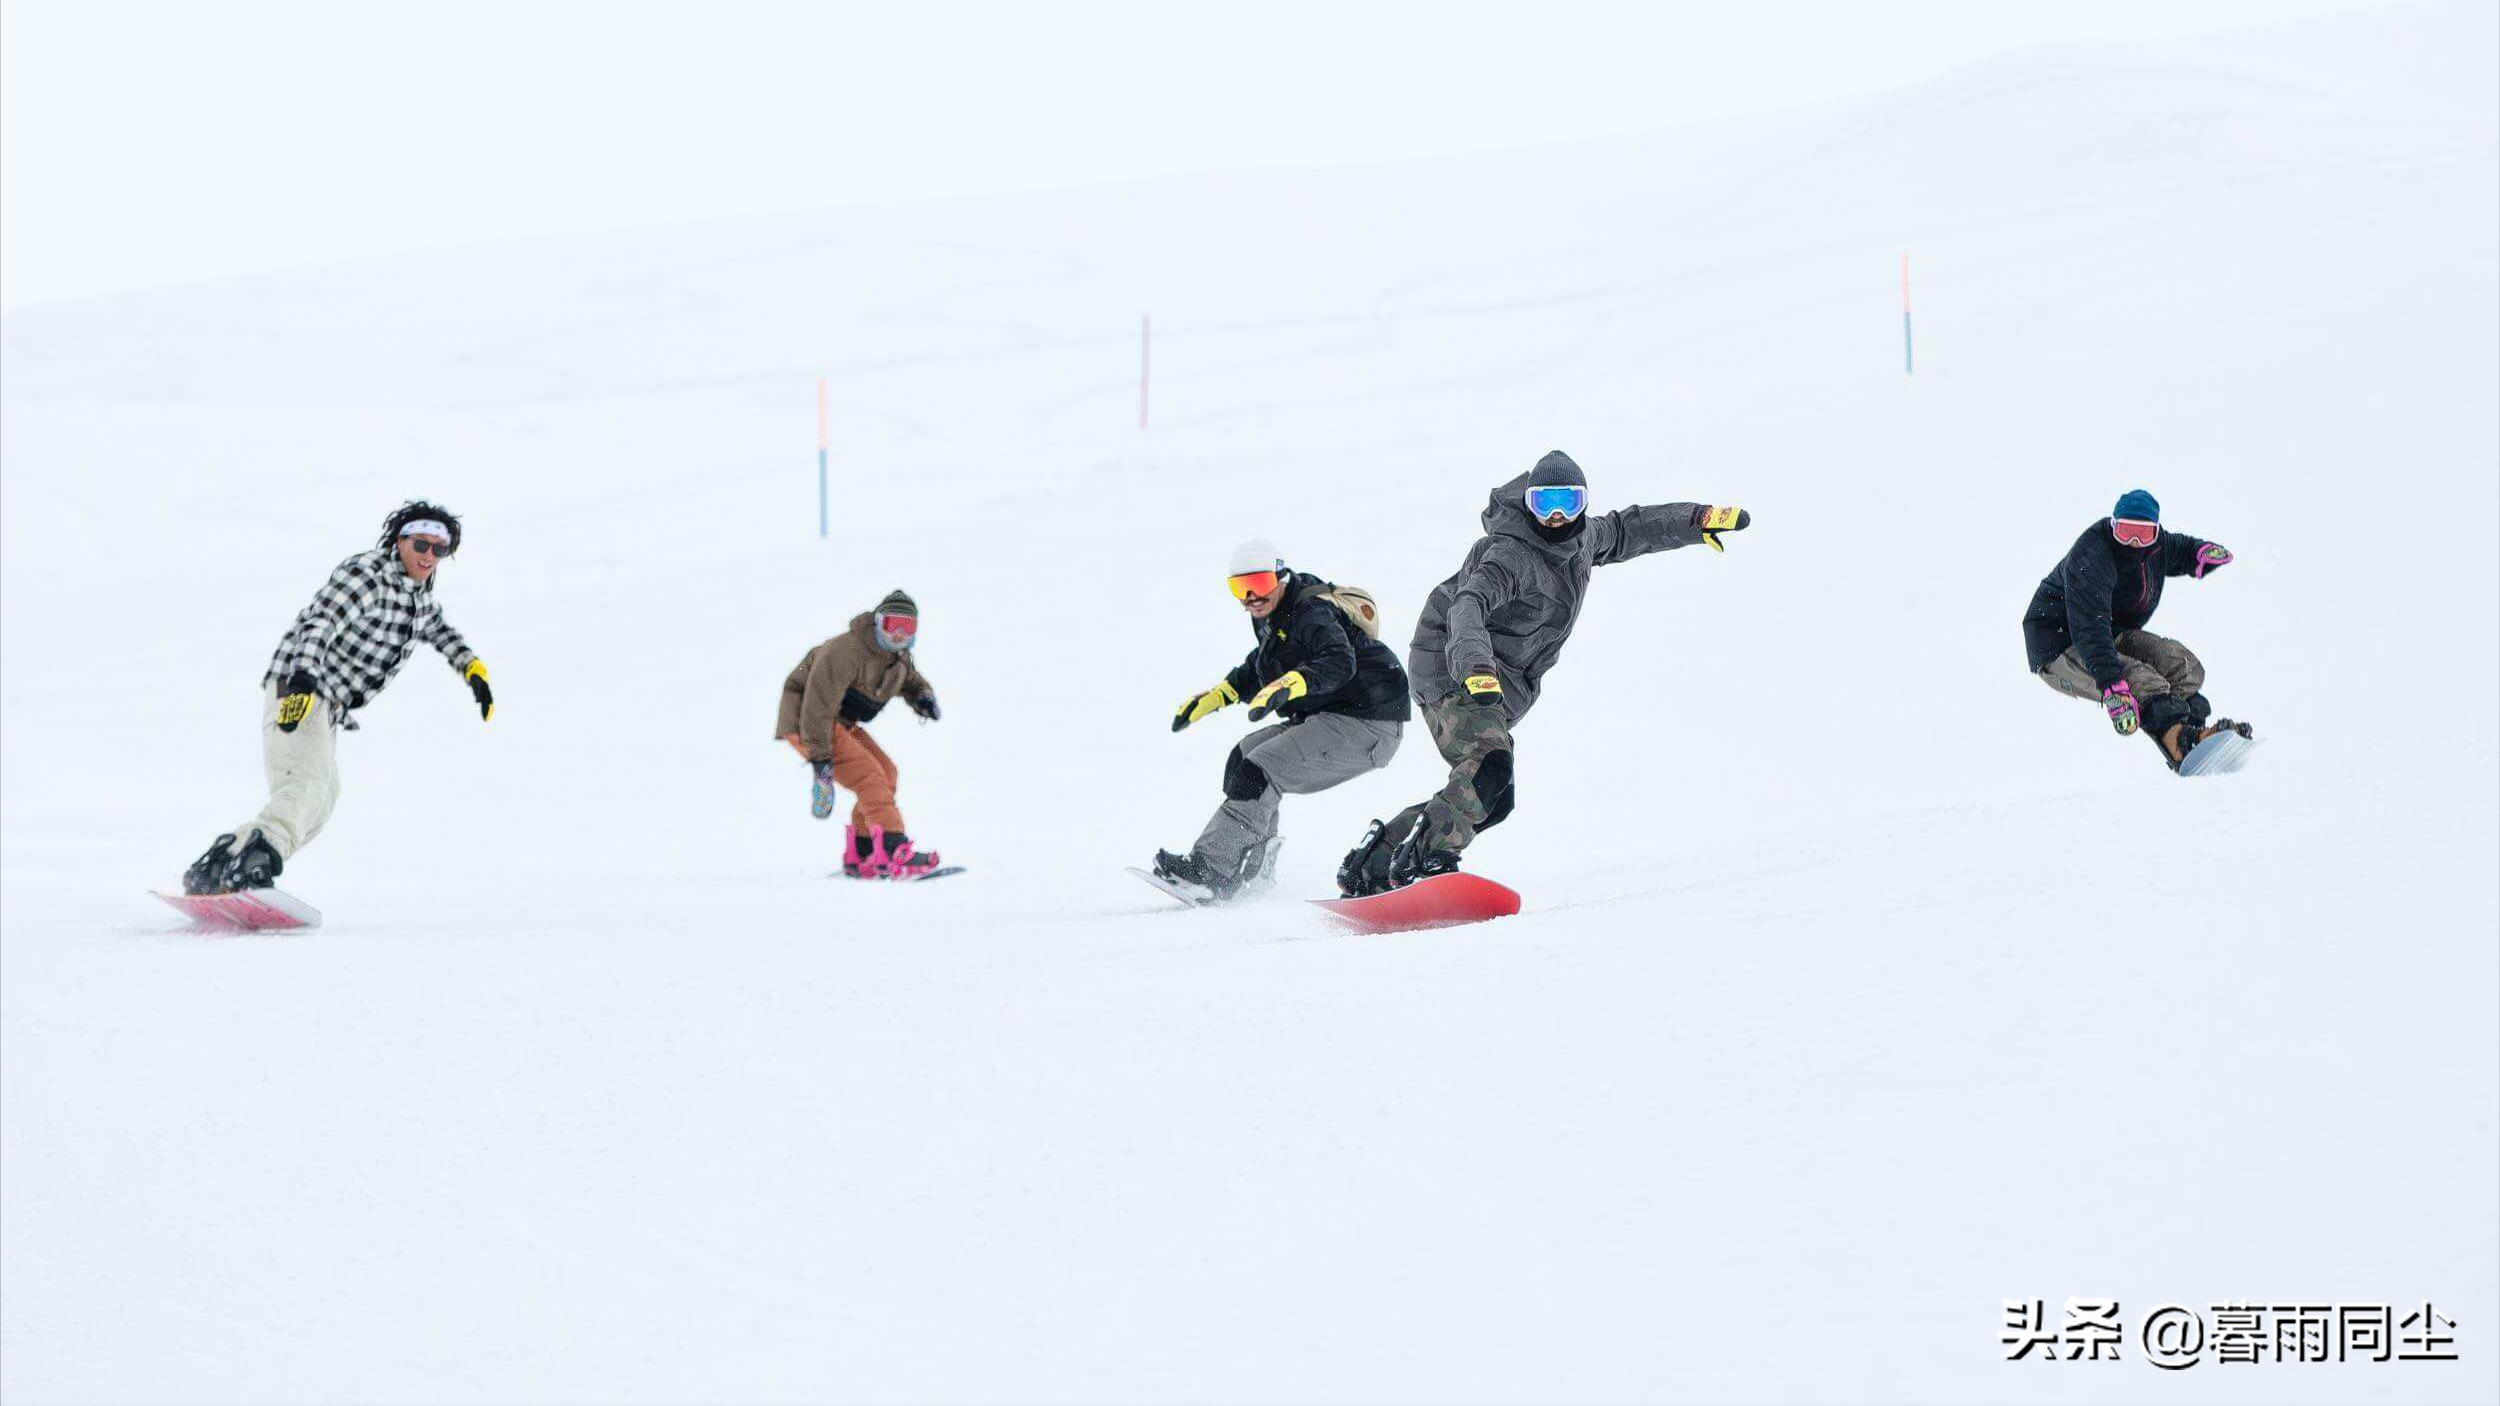 滑雪初学者该选择单板还是双板？哪一个更危险？如何避免危险？